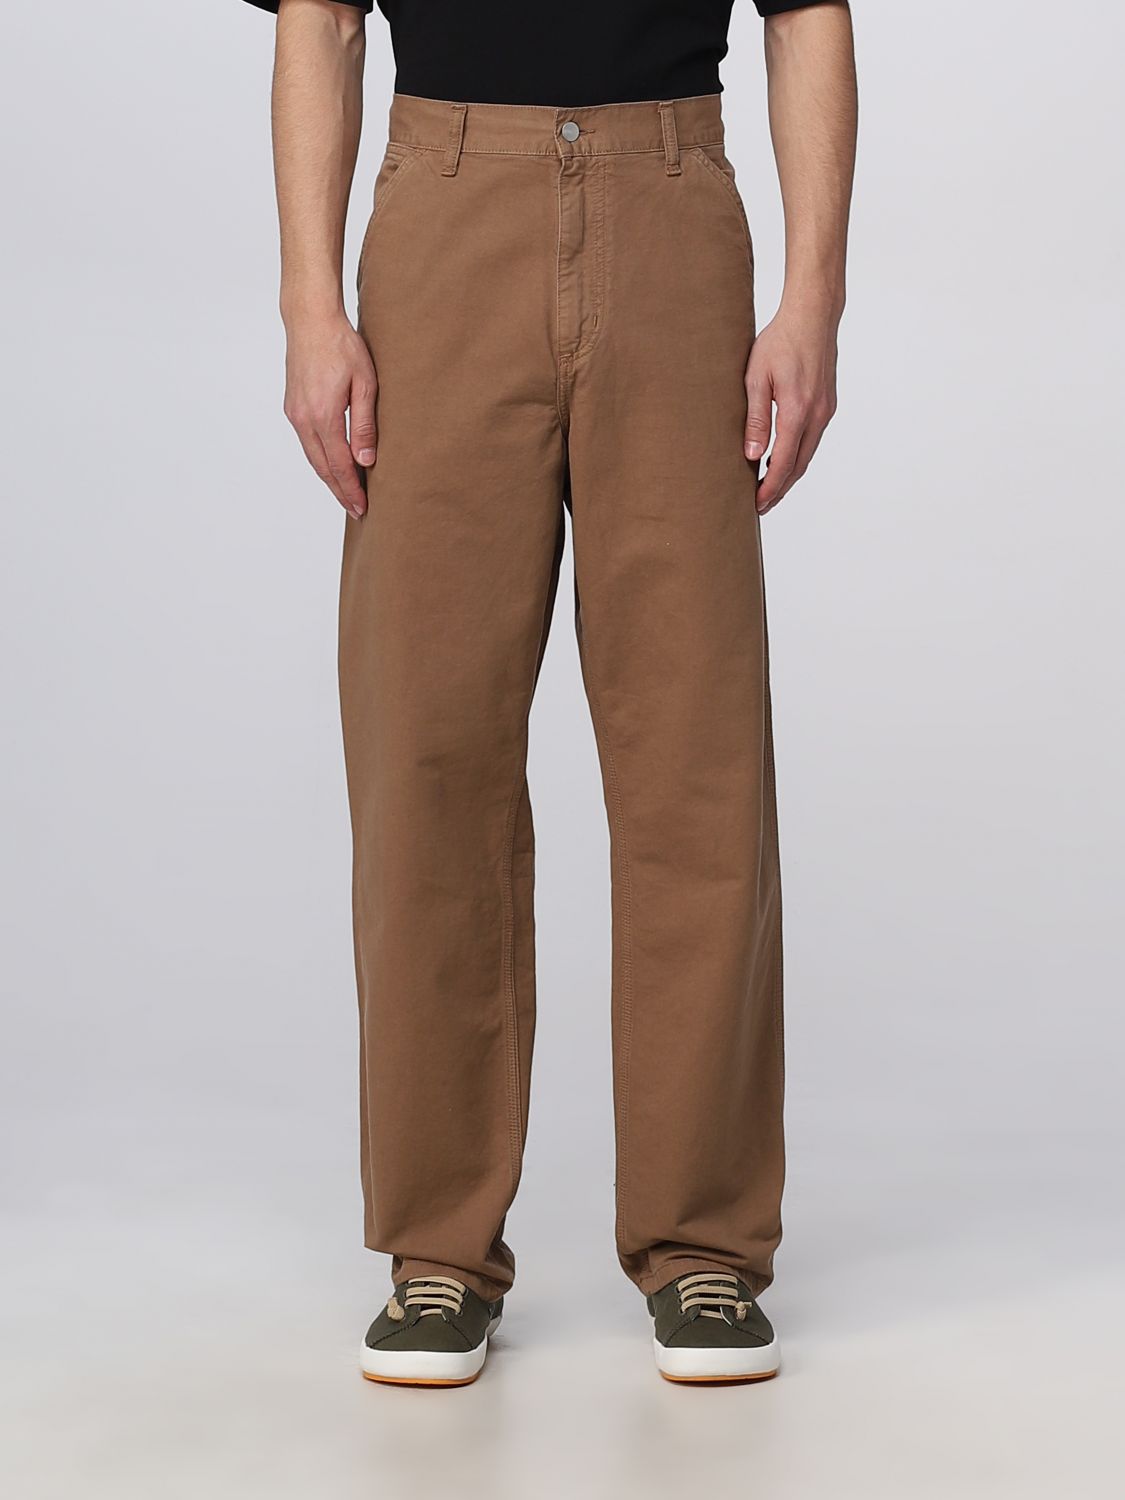 Carhartt Pants  Wip Men Color Brown